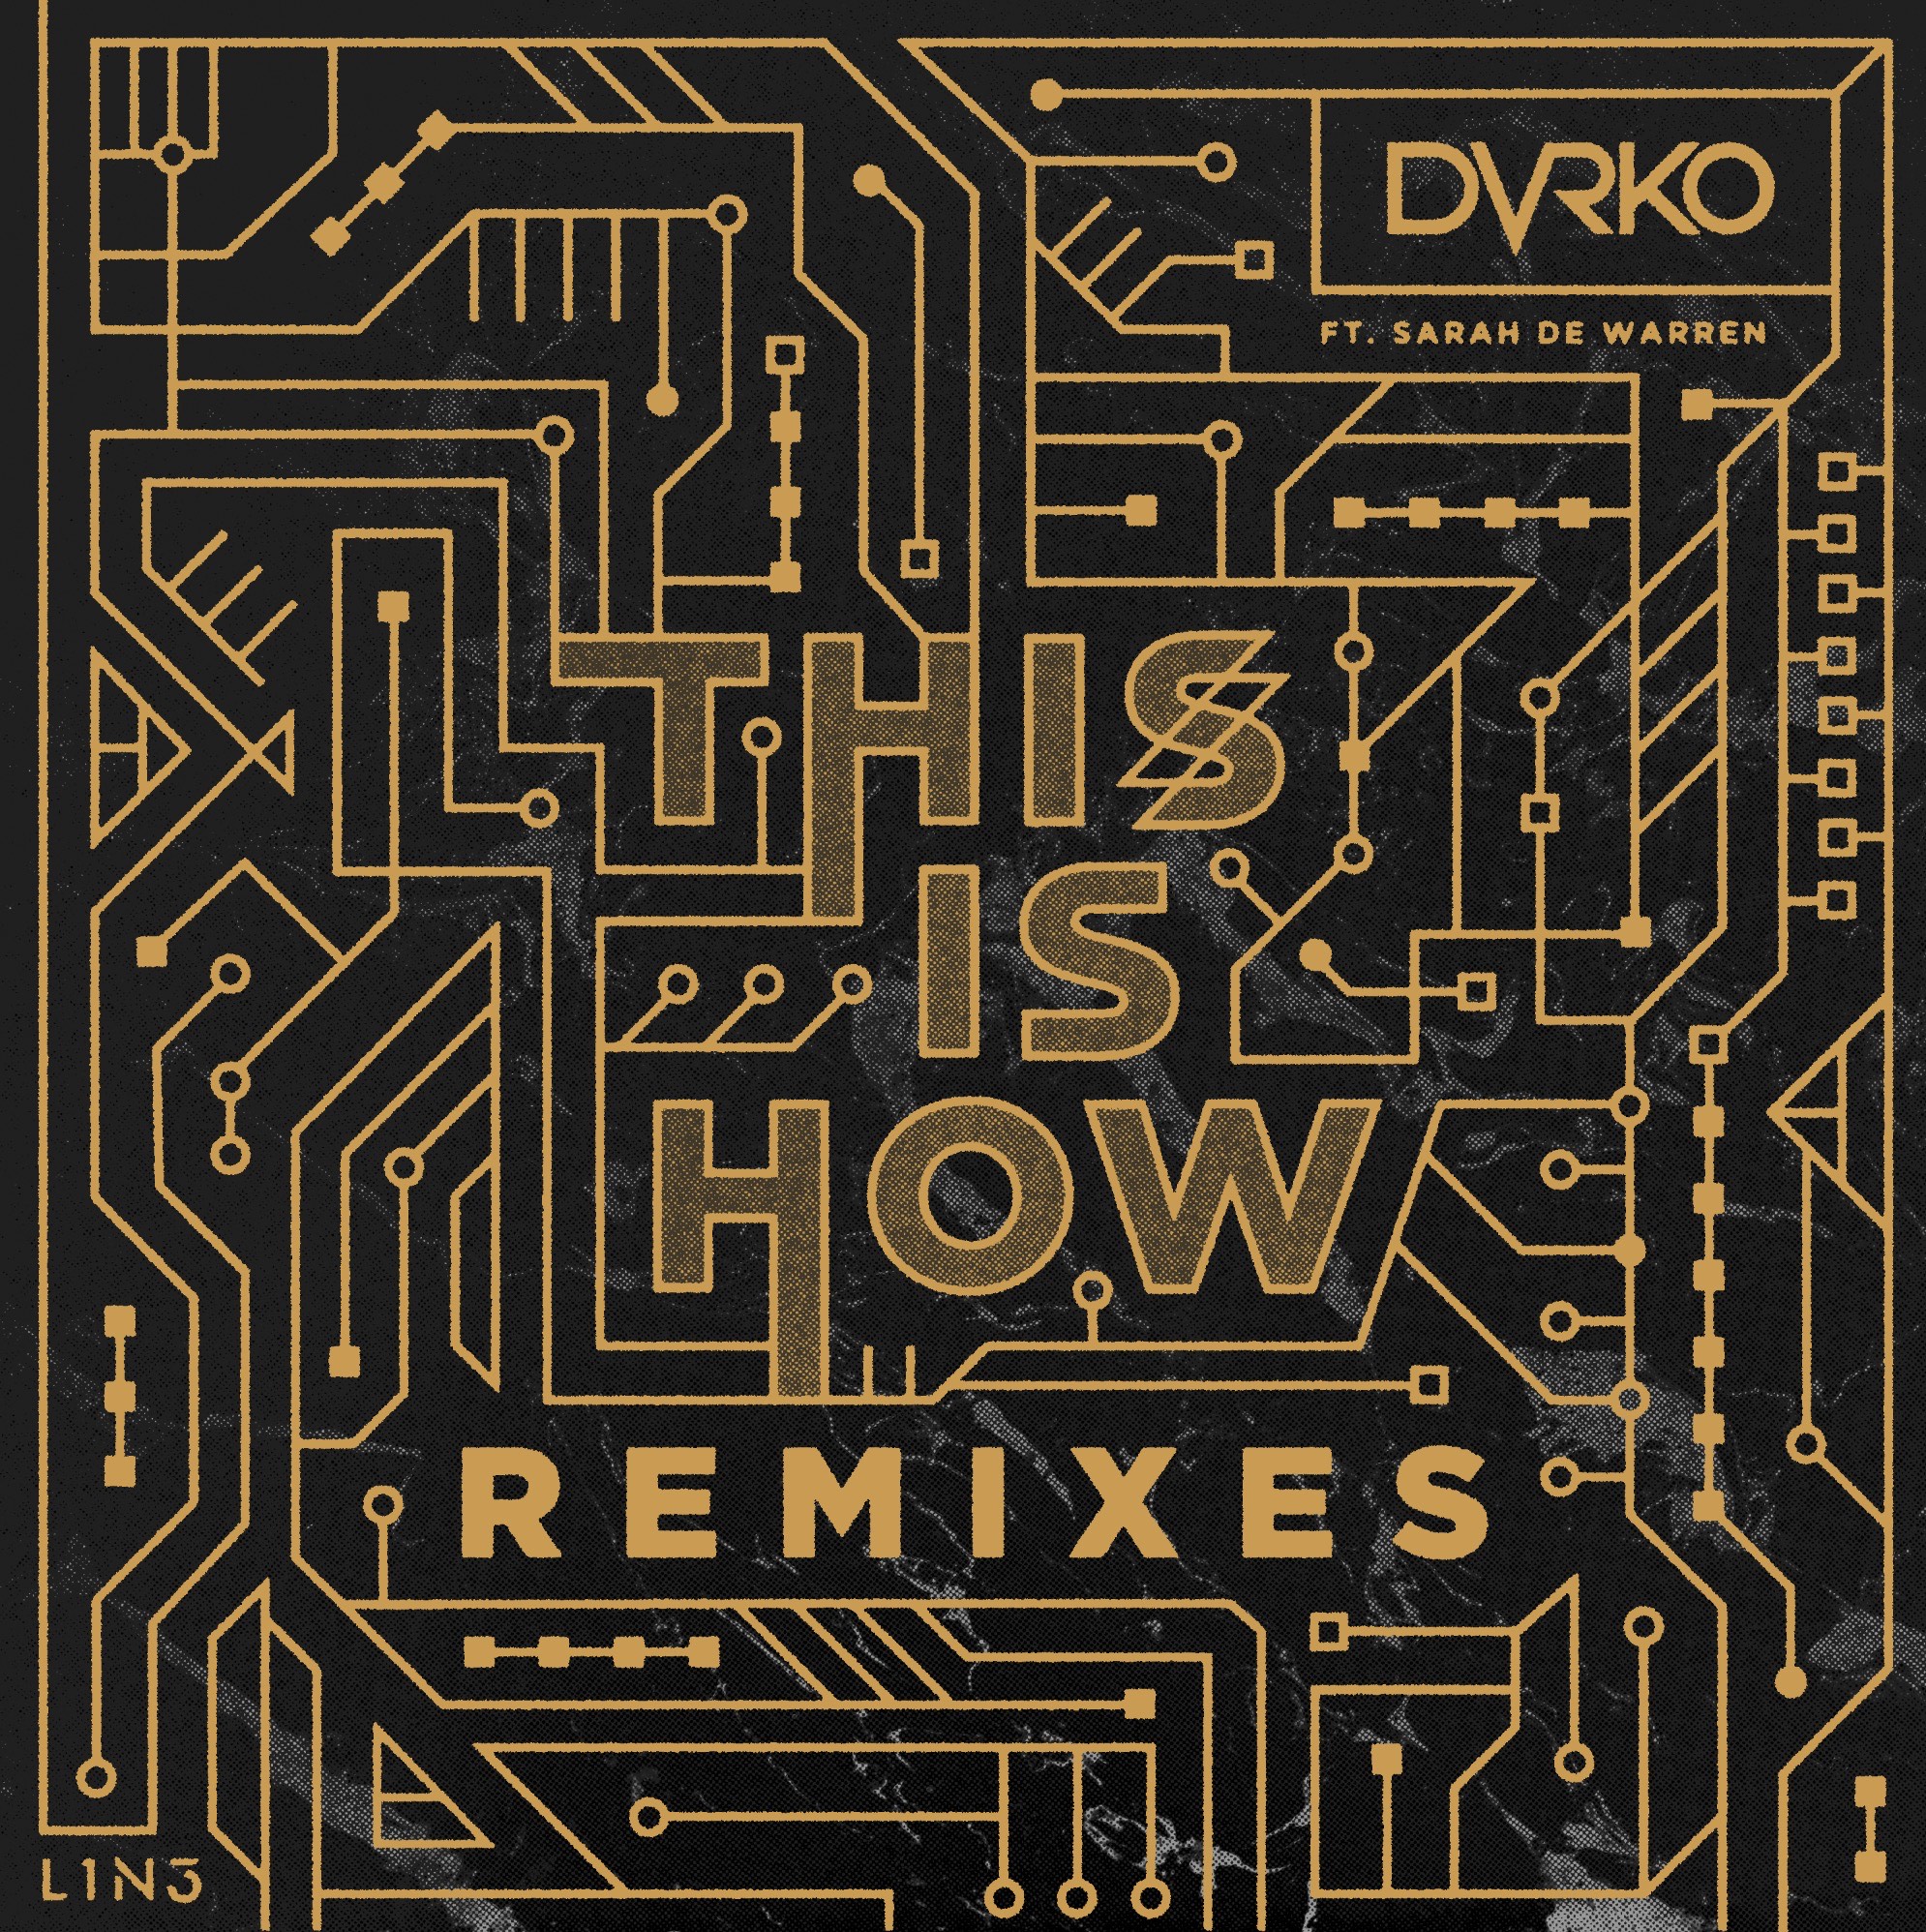 DVRKO ft Sarah De Warren, "This Is How - The Remixes" - album artwork